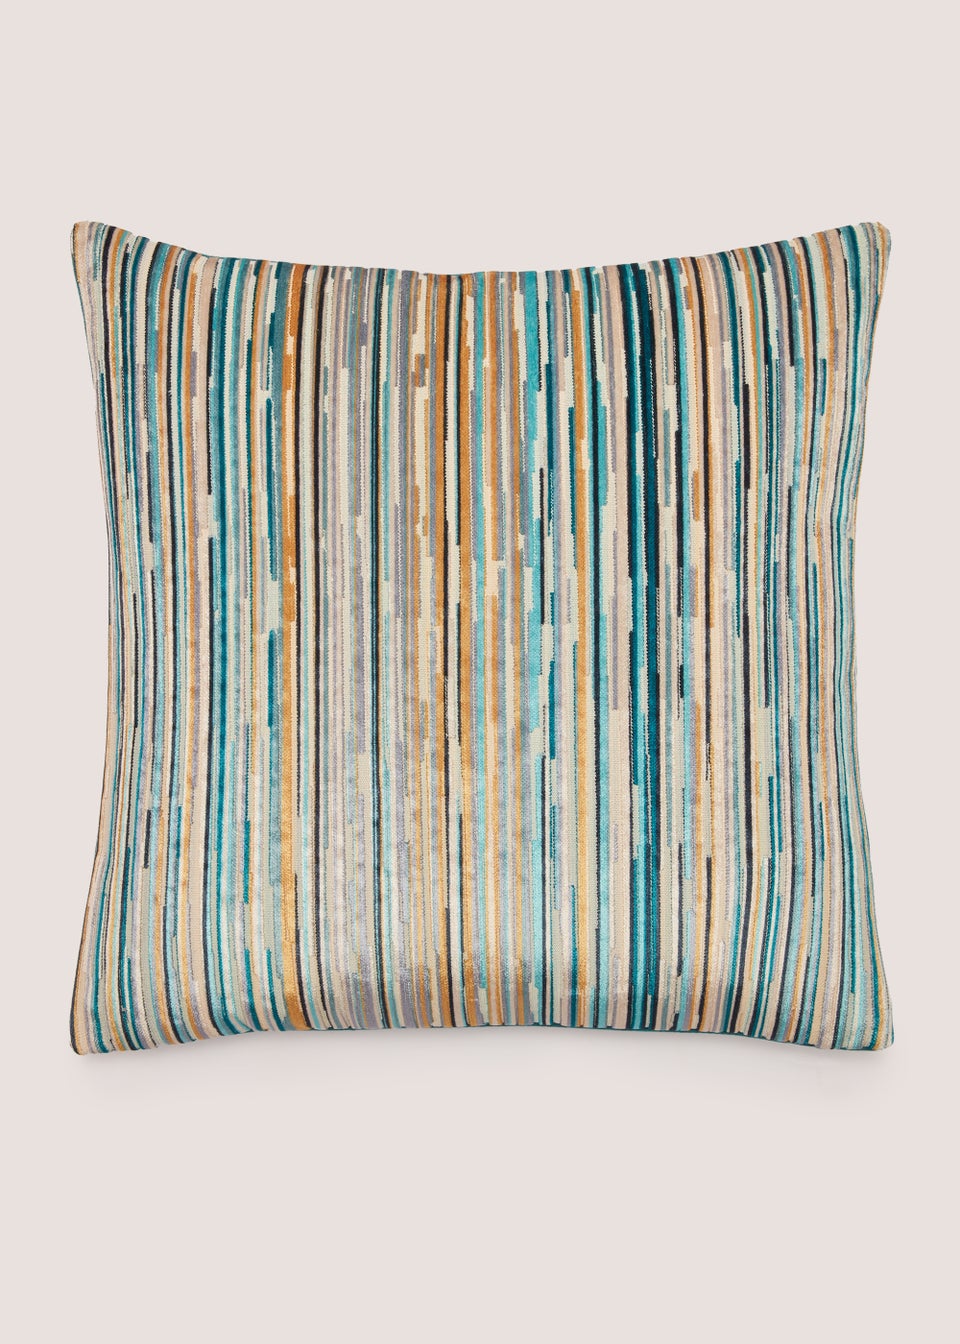 Teal Stripe Velvet Cushion (43cm x 43cm)